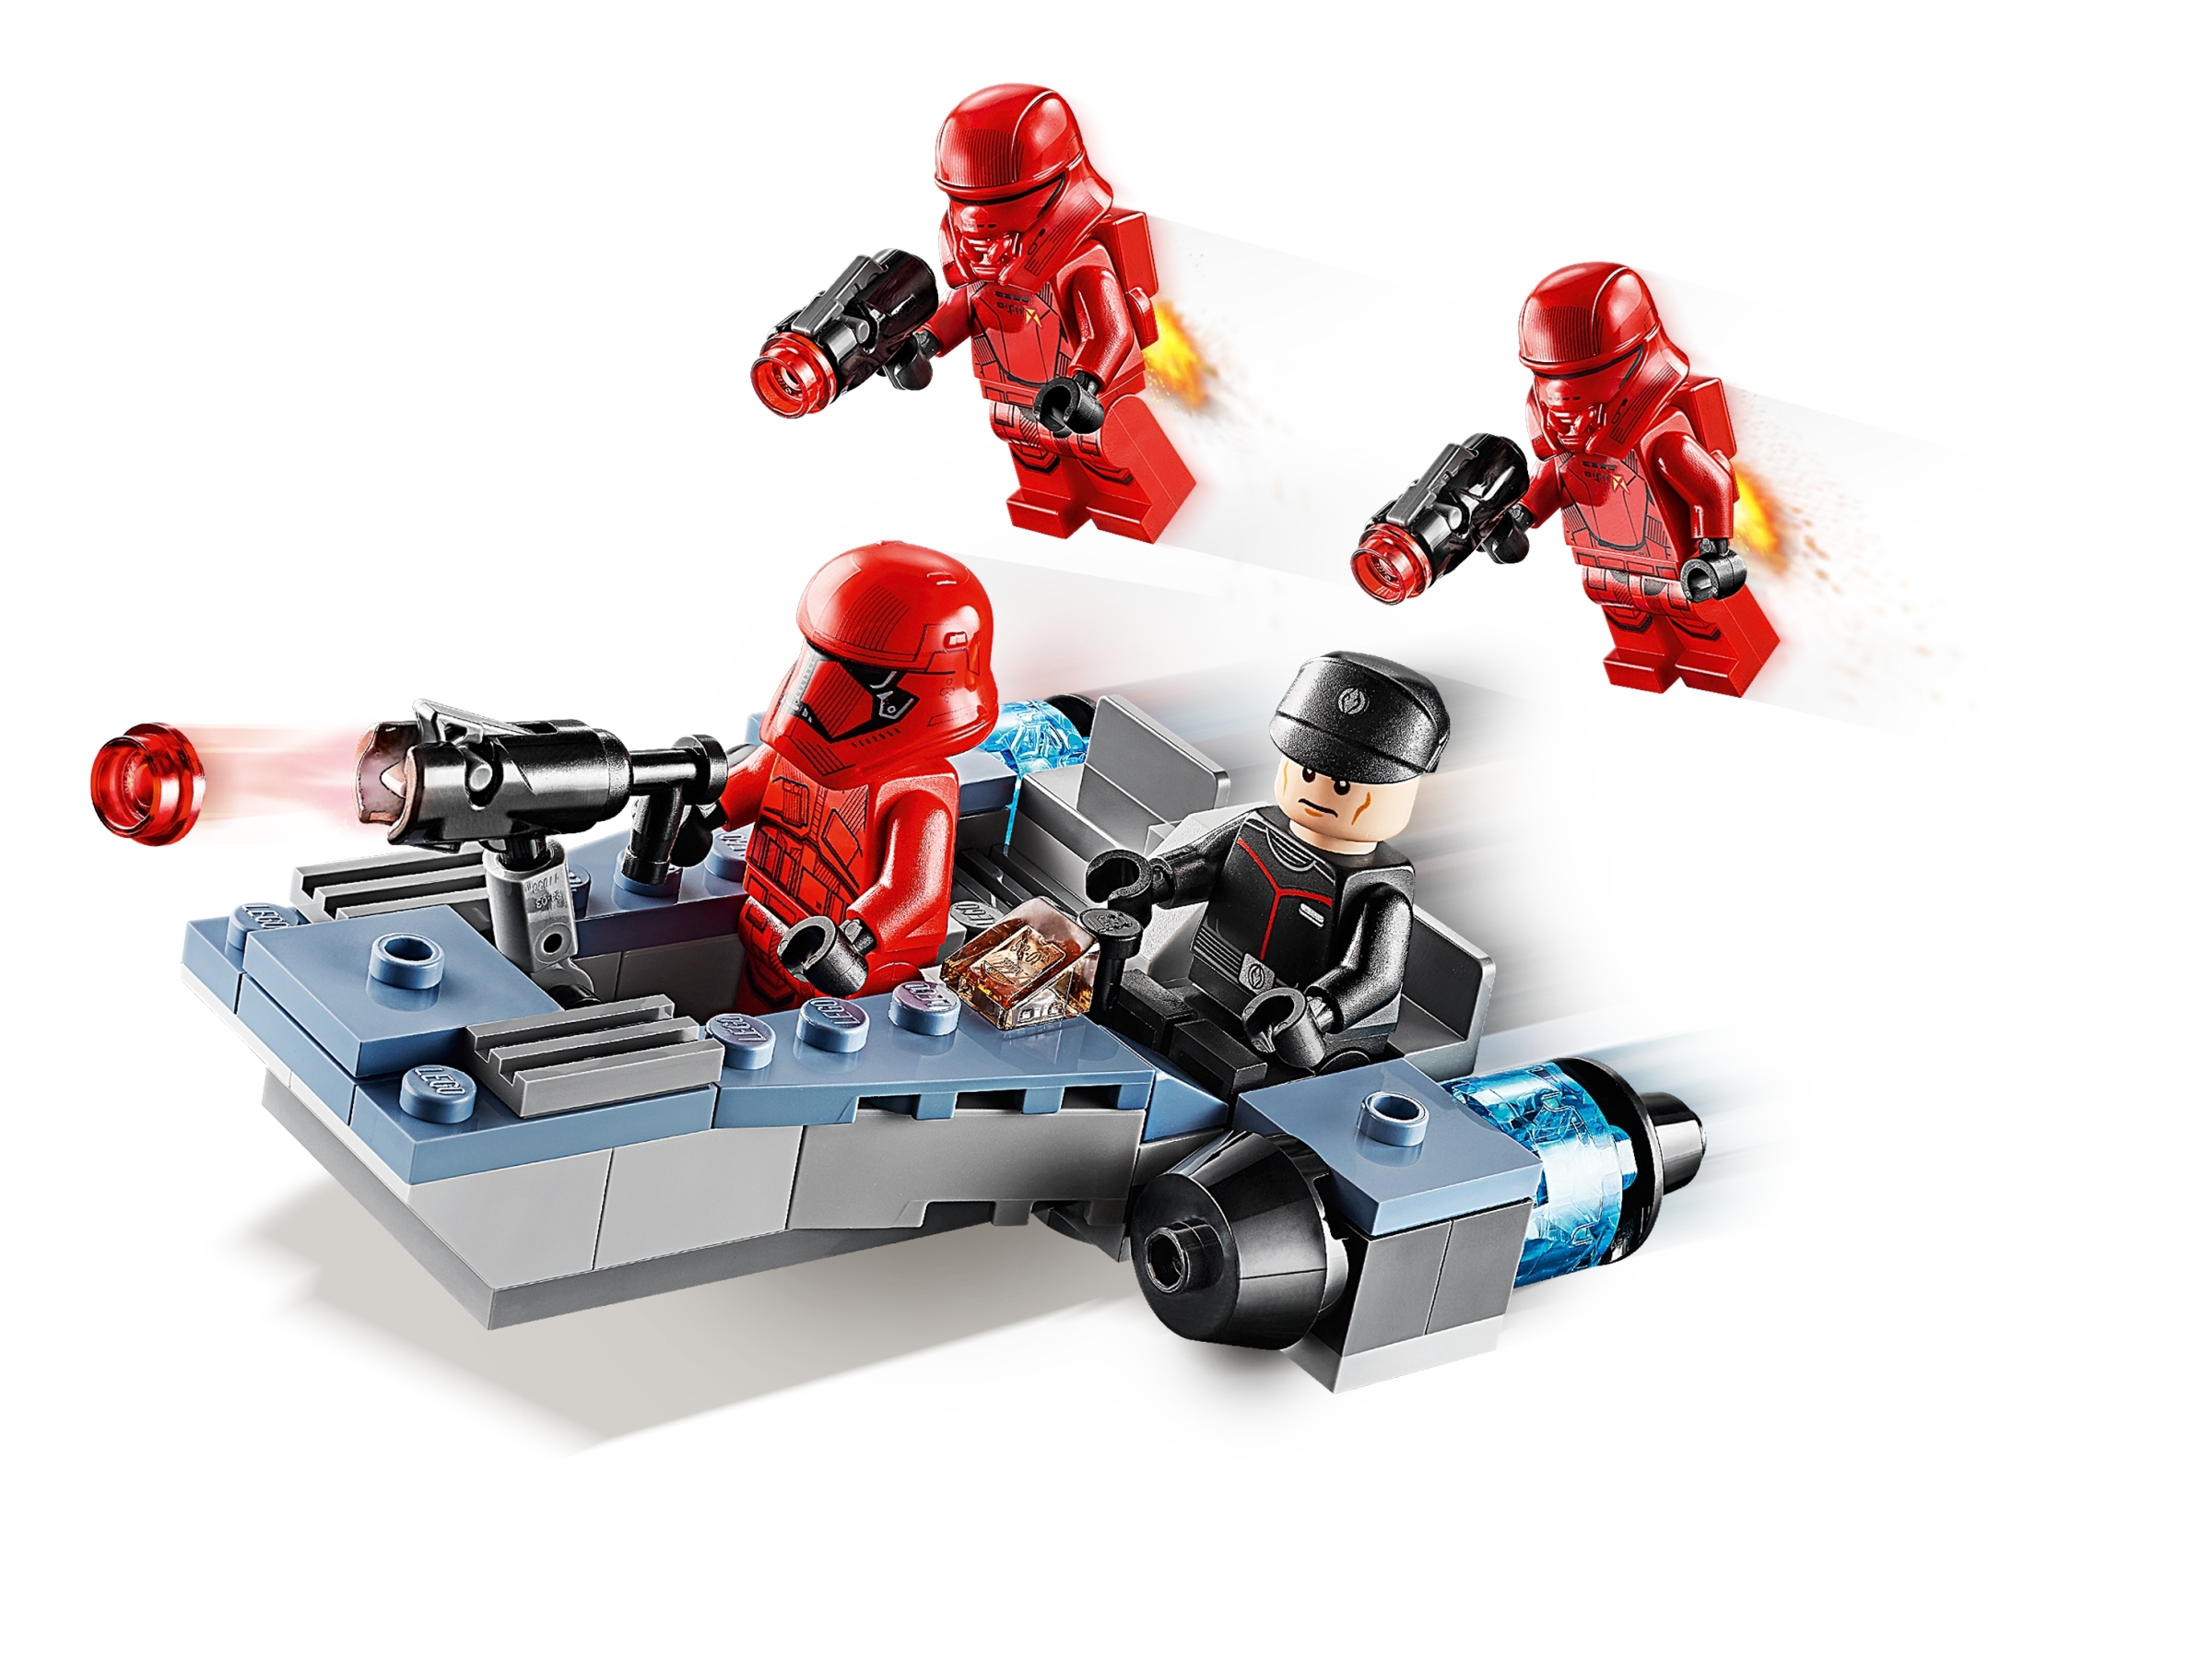 NUOVO COSTRUZIONI LEGO Minifigura JET Sith Trooper SW1075 da Star Wars Set 75266 2020 